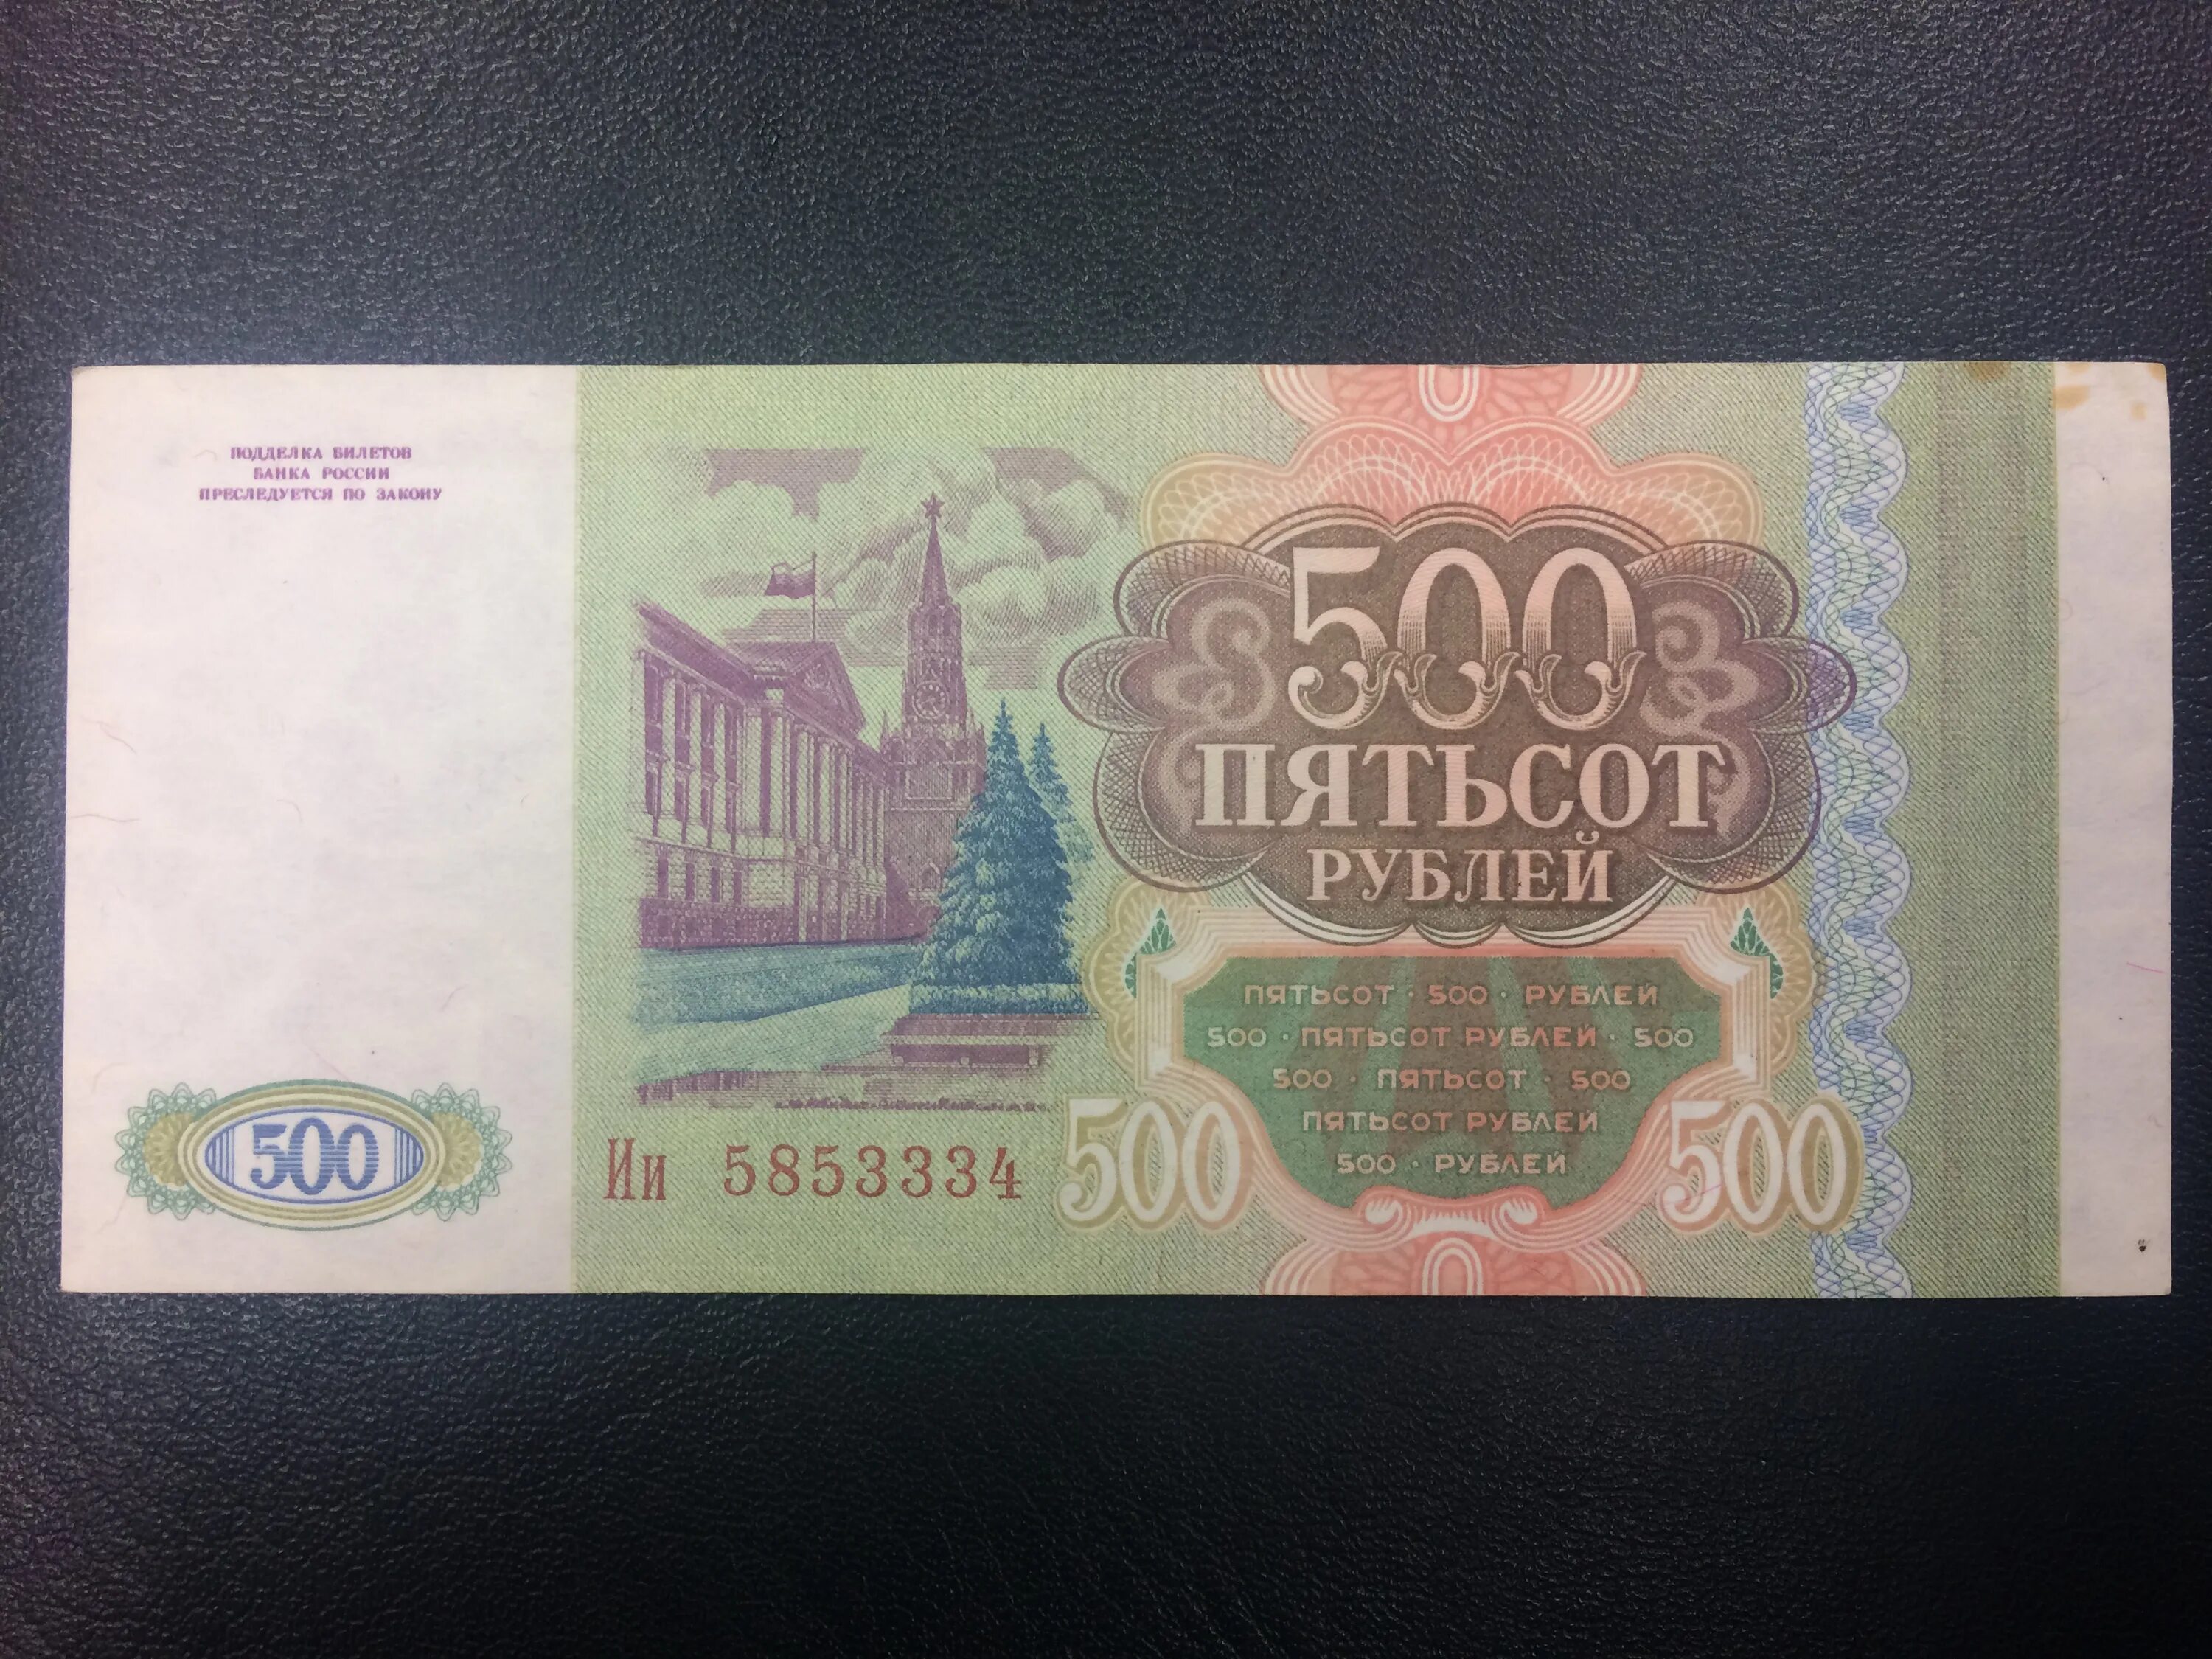 4 500 000 в рублях. 500 Рублей 1993. Купюра 500 рублей 1993 года. Пятьсот рублей 1993 года. Купюра 500 рублей 1993.